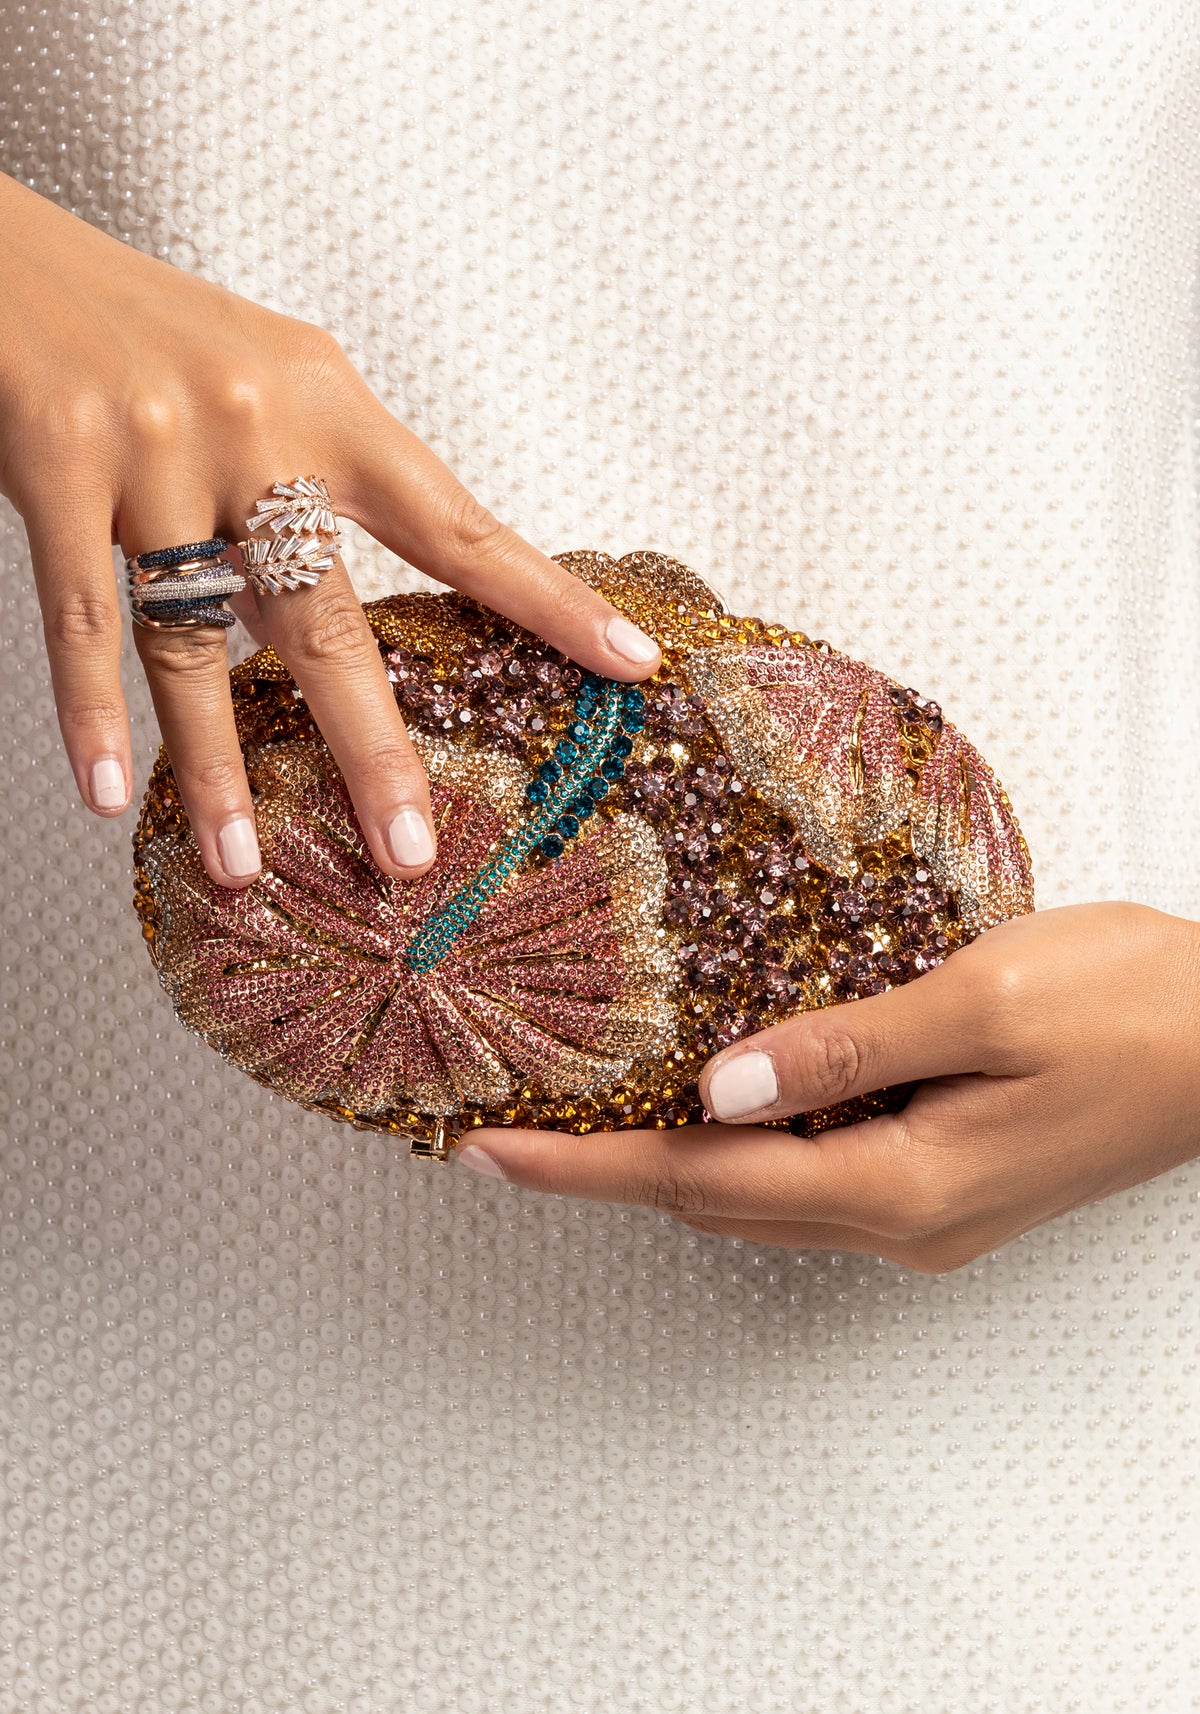 Gemstone ornate luxury handbag